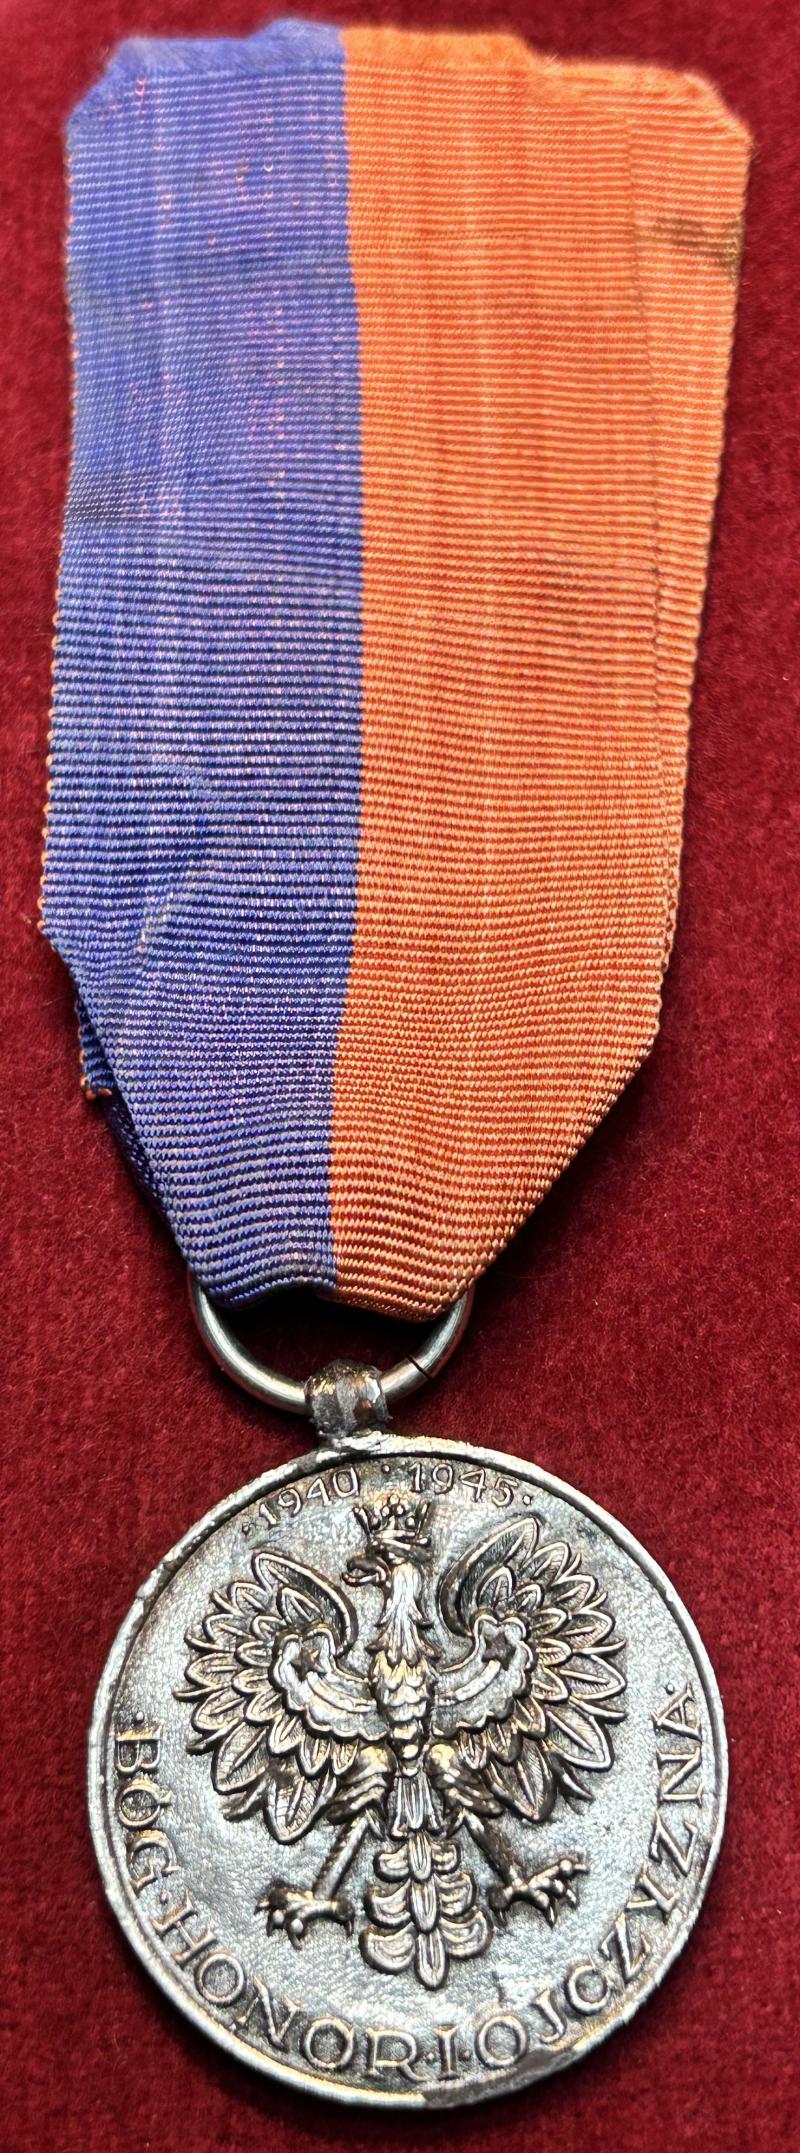 Polski Pamiątkowy medal 3 dywizji strzelców Karpackich,upamiętniający szlak bojowy